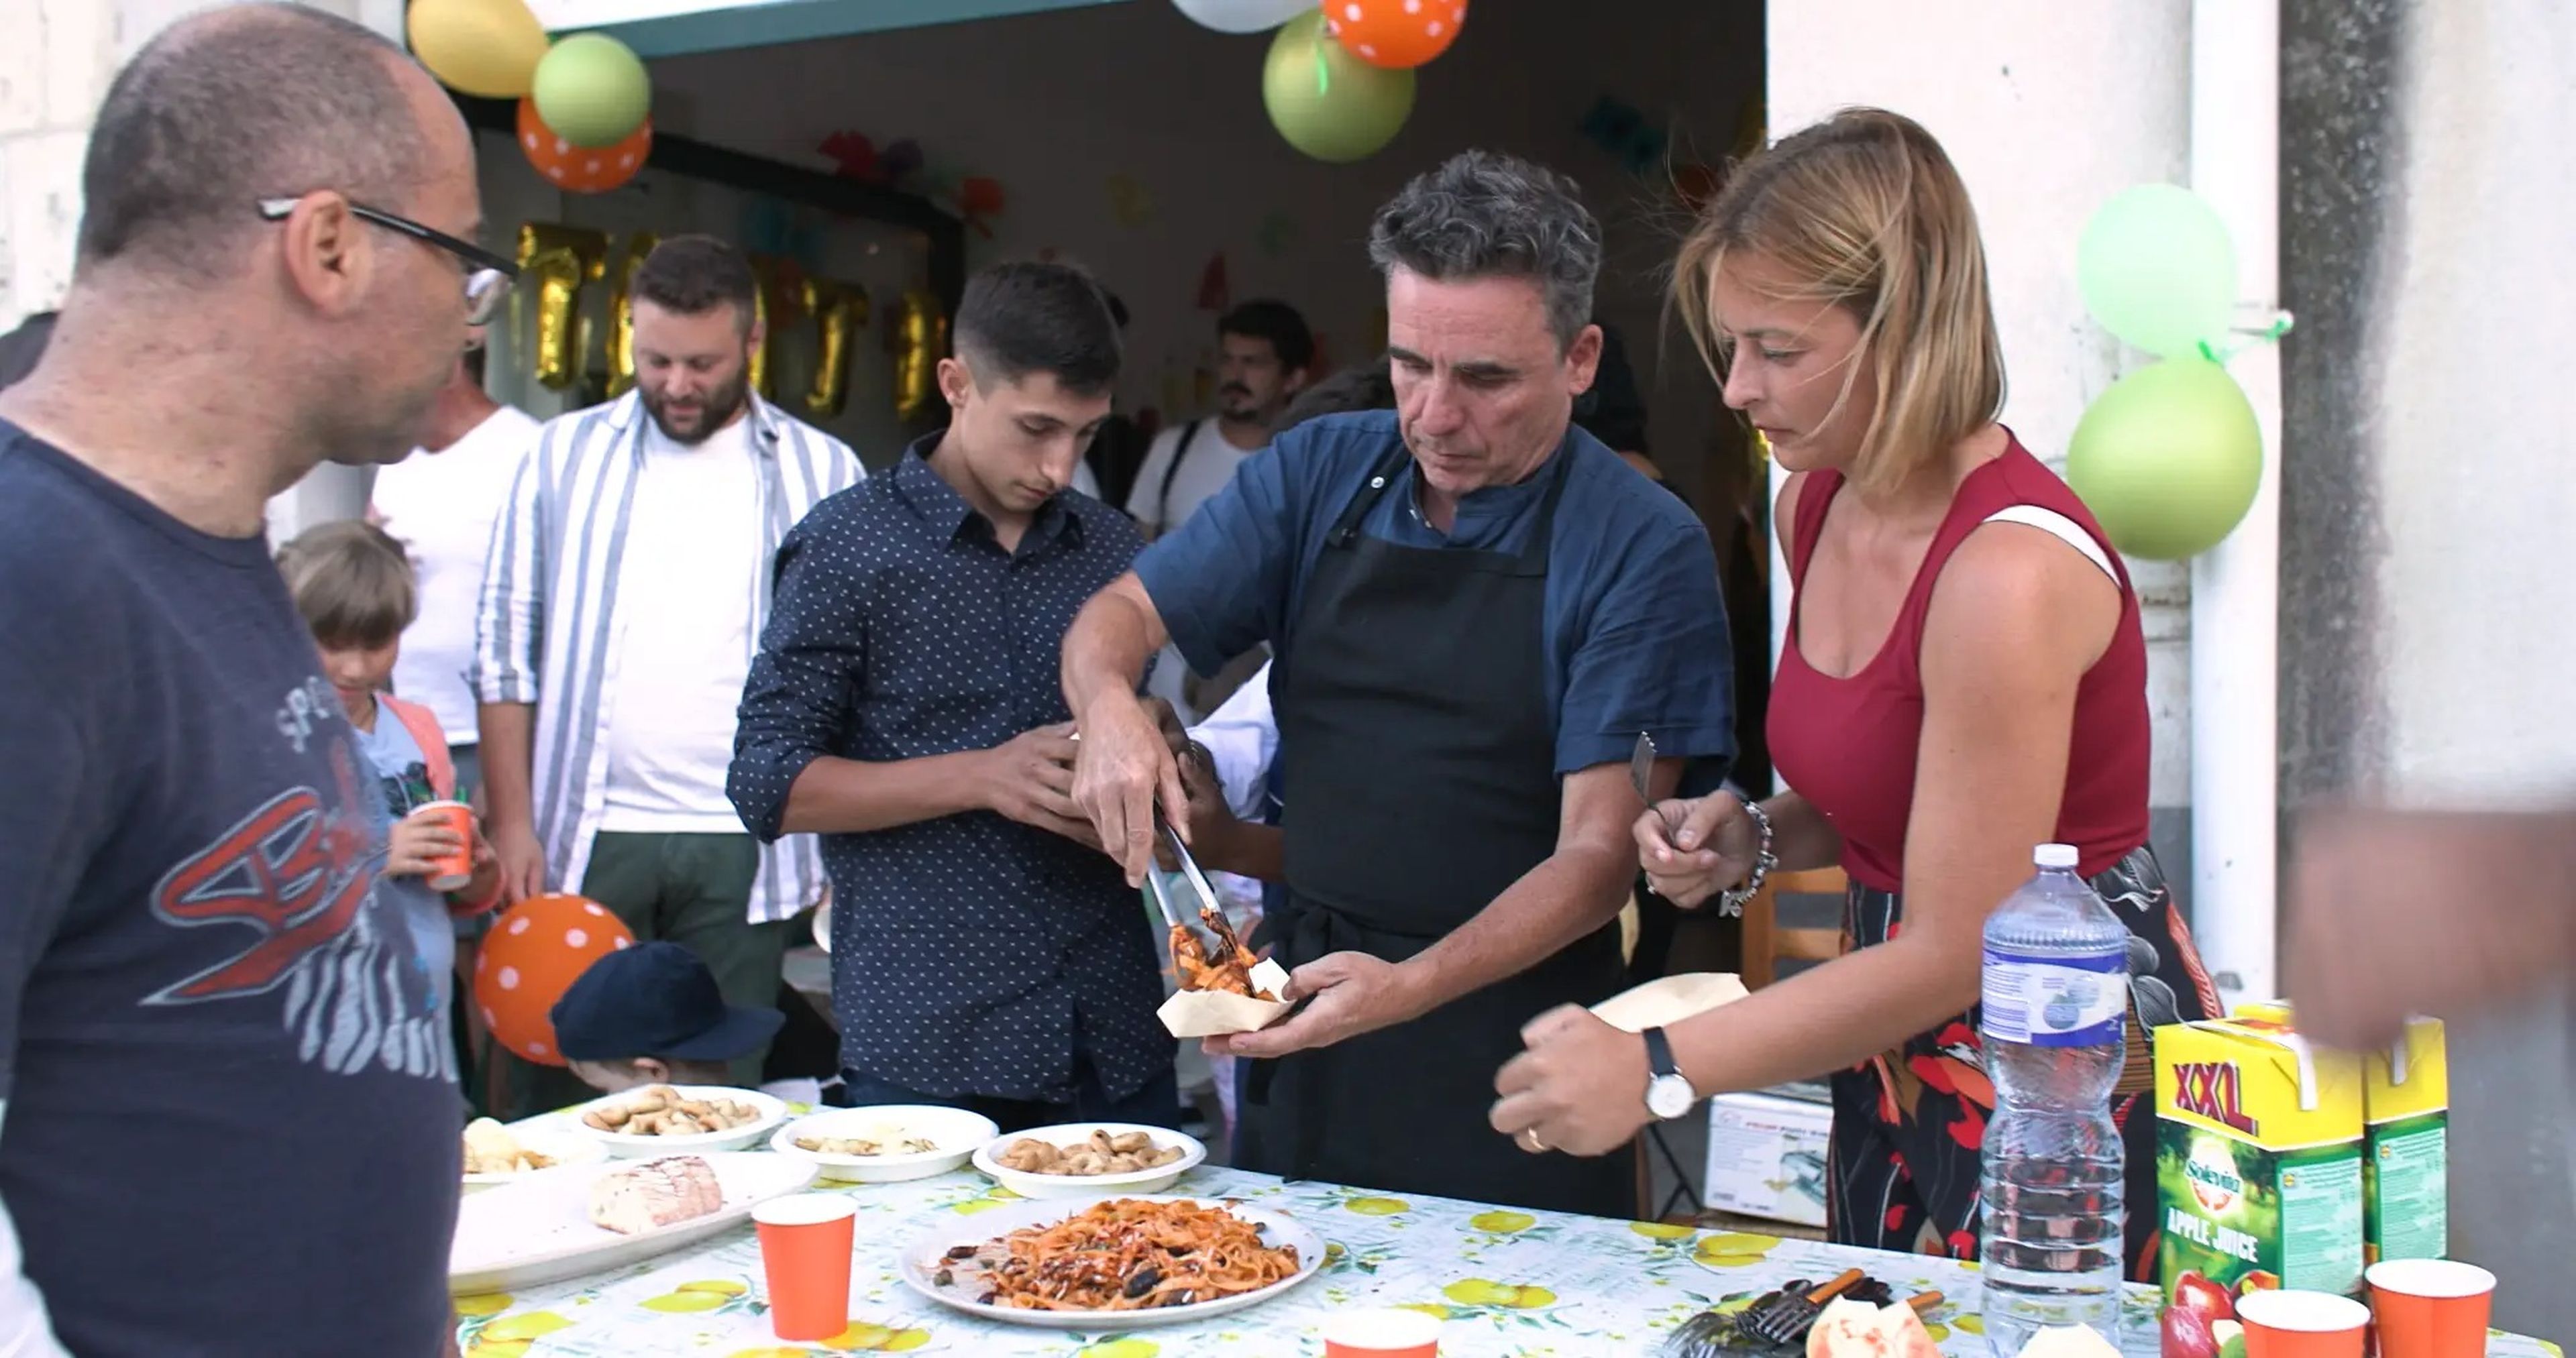 Danny McCubbin sirve pasta para celebrar los dos años de The Good Kitchen en Mussomeli, Italia.